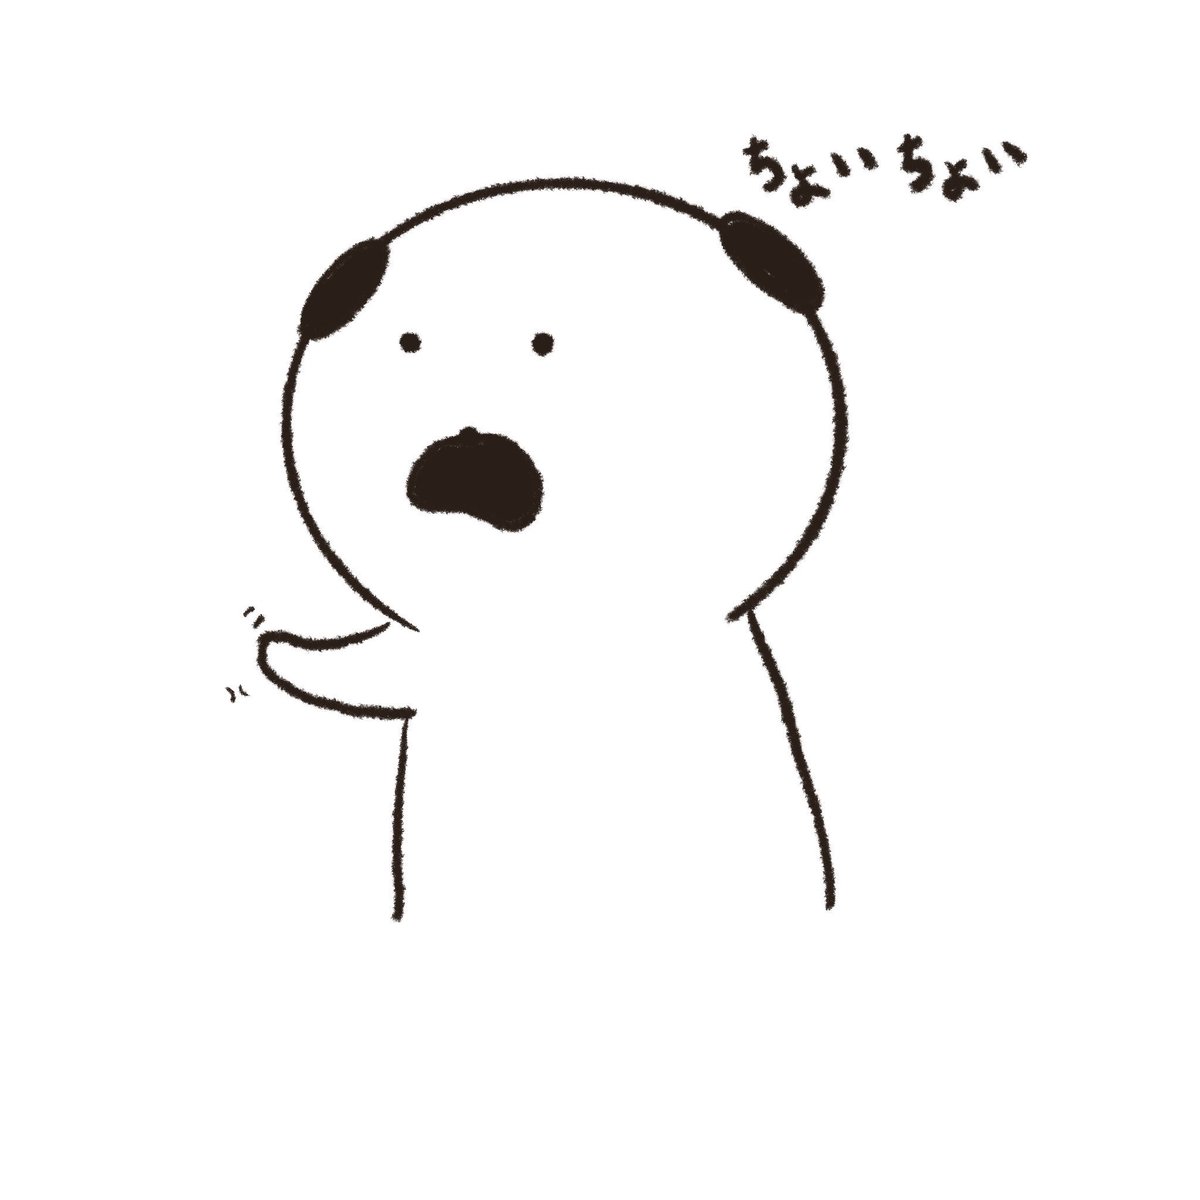 Marubooo まるぼー ちょいちょい 絵描きさんと繋がりたい イラスト好きな人と繋がりたい Pug パグ イラスト マンガ まぬけん 日常 毎日 犬 Illustration Illustrator Mydrawing 可愛い かわいい ゆるい いぬ キャラクター Dog